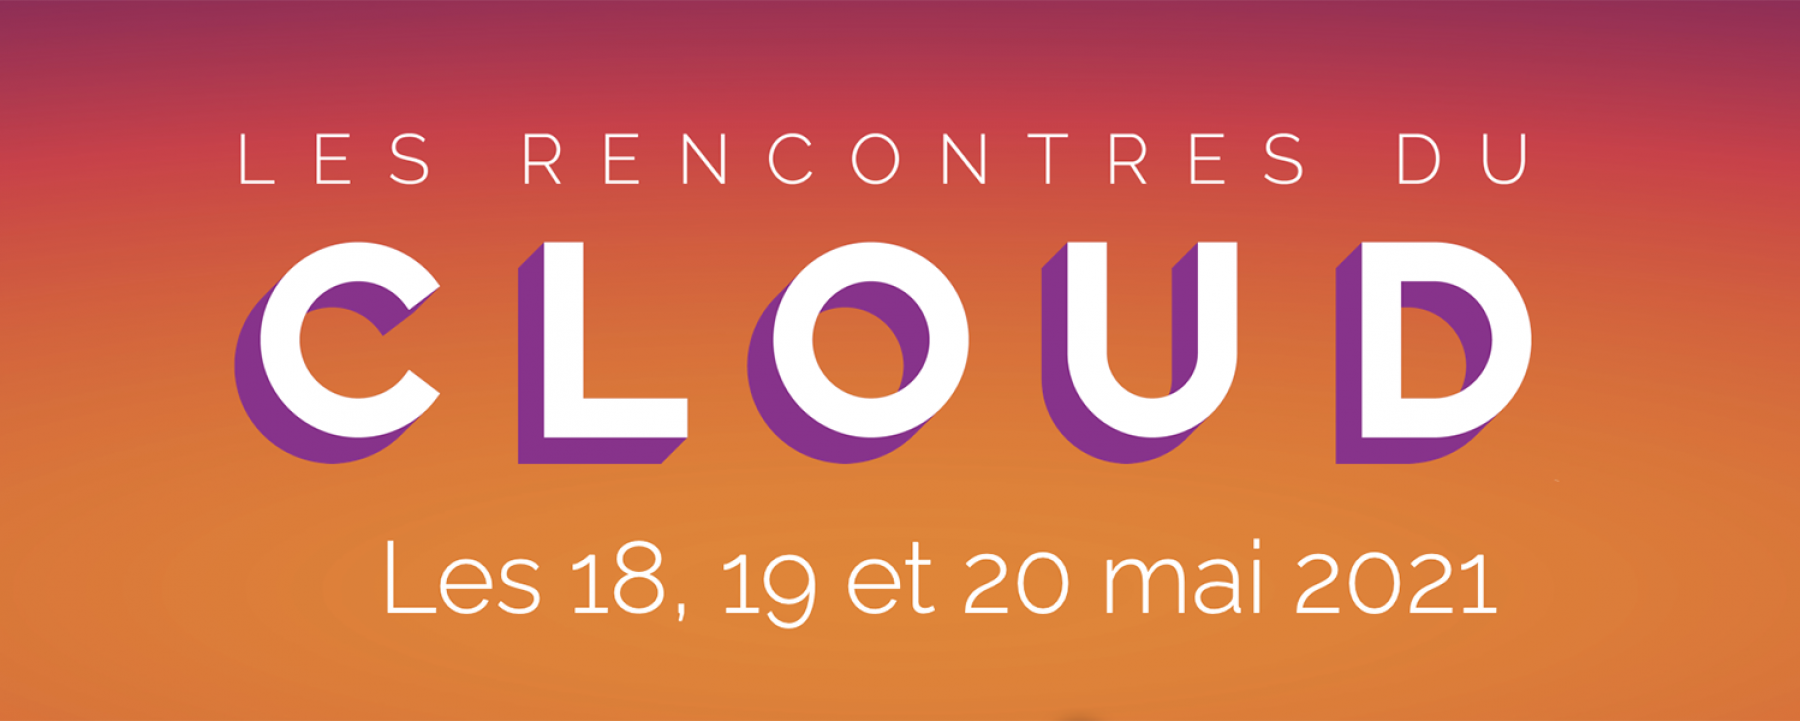 Les Rencontres du Cloud 2021, organisé par EuroCloud et Prache Media Event du 18 au 20 mai 2021